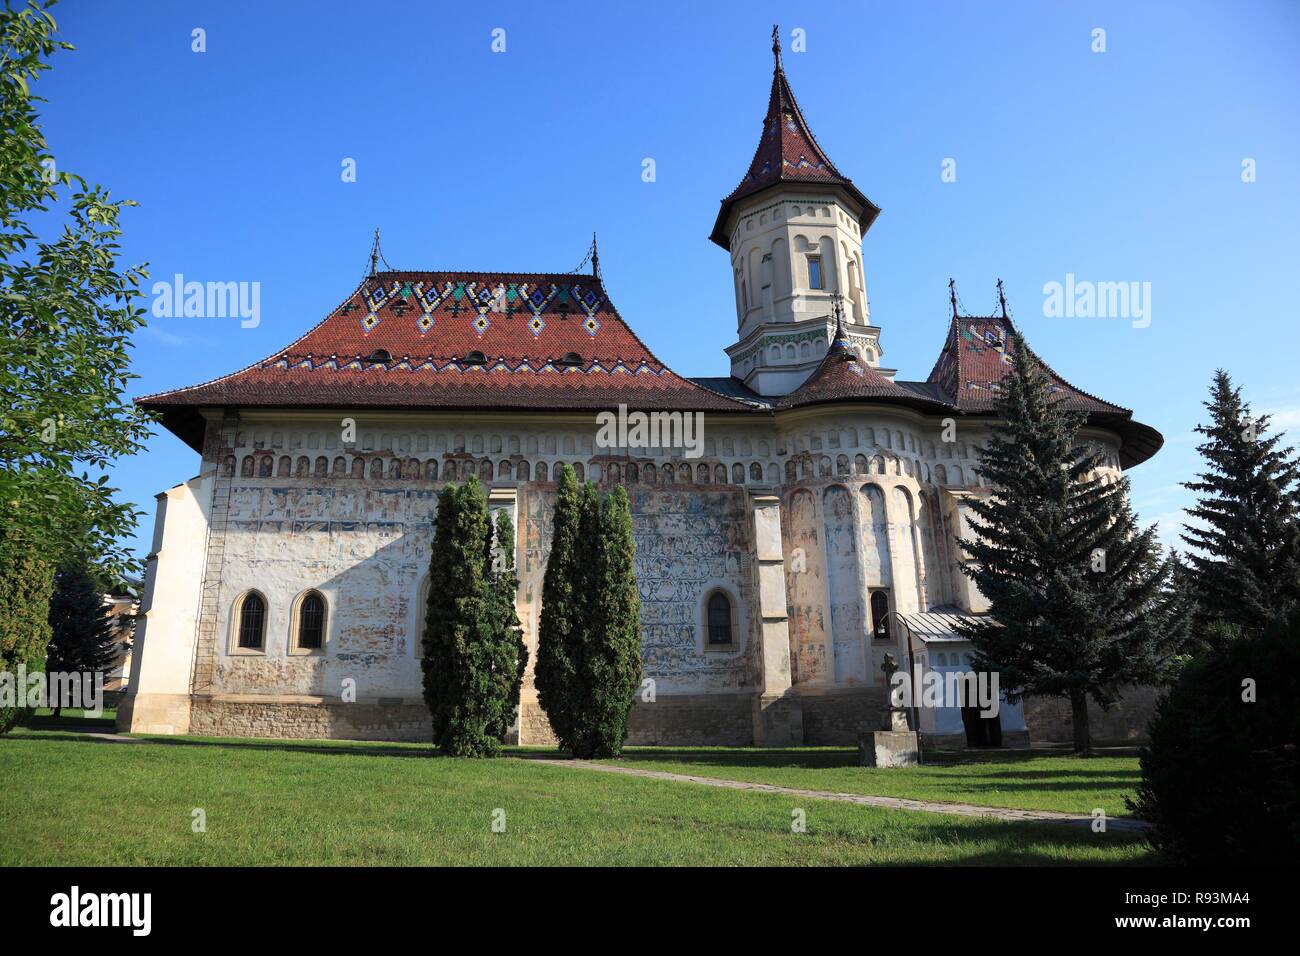 Mitropoliei, Kloster St. Gheorghe, Biserica Sf. Gheorghe Mirauiti, Kirche des Heiligen Georg, in Suceava Stockfoto